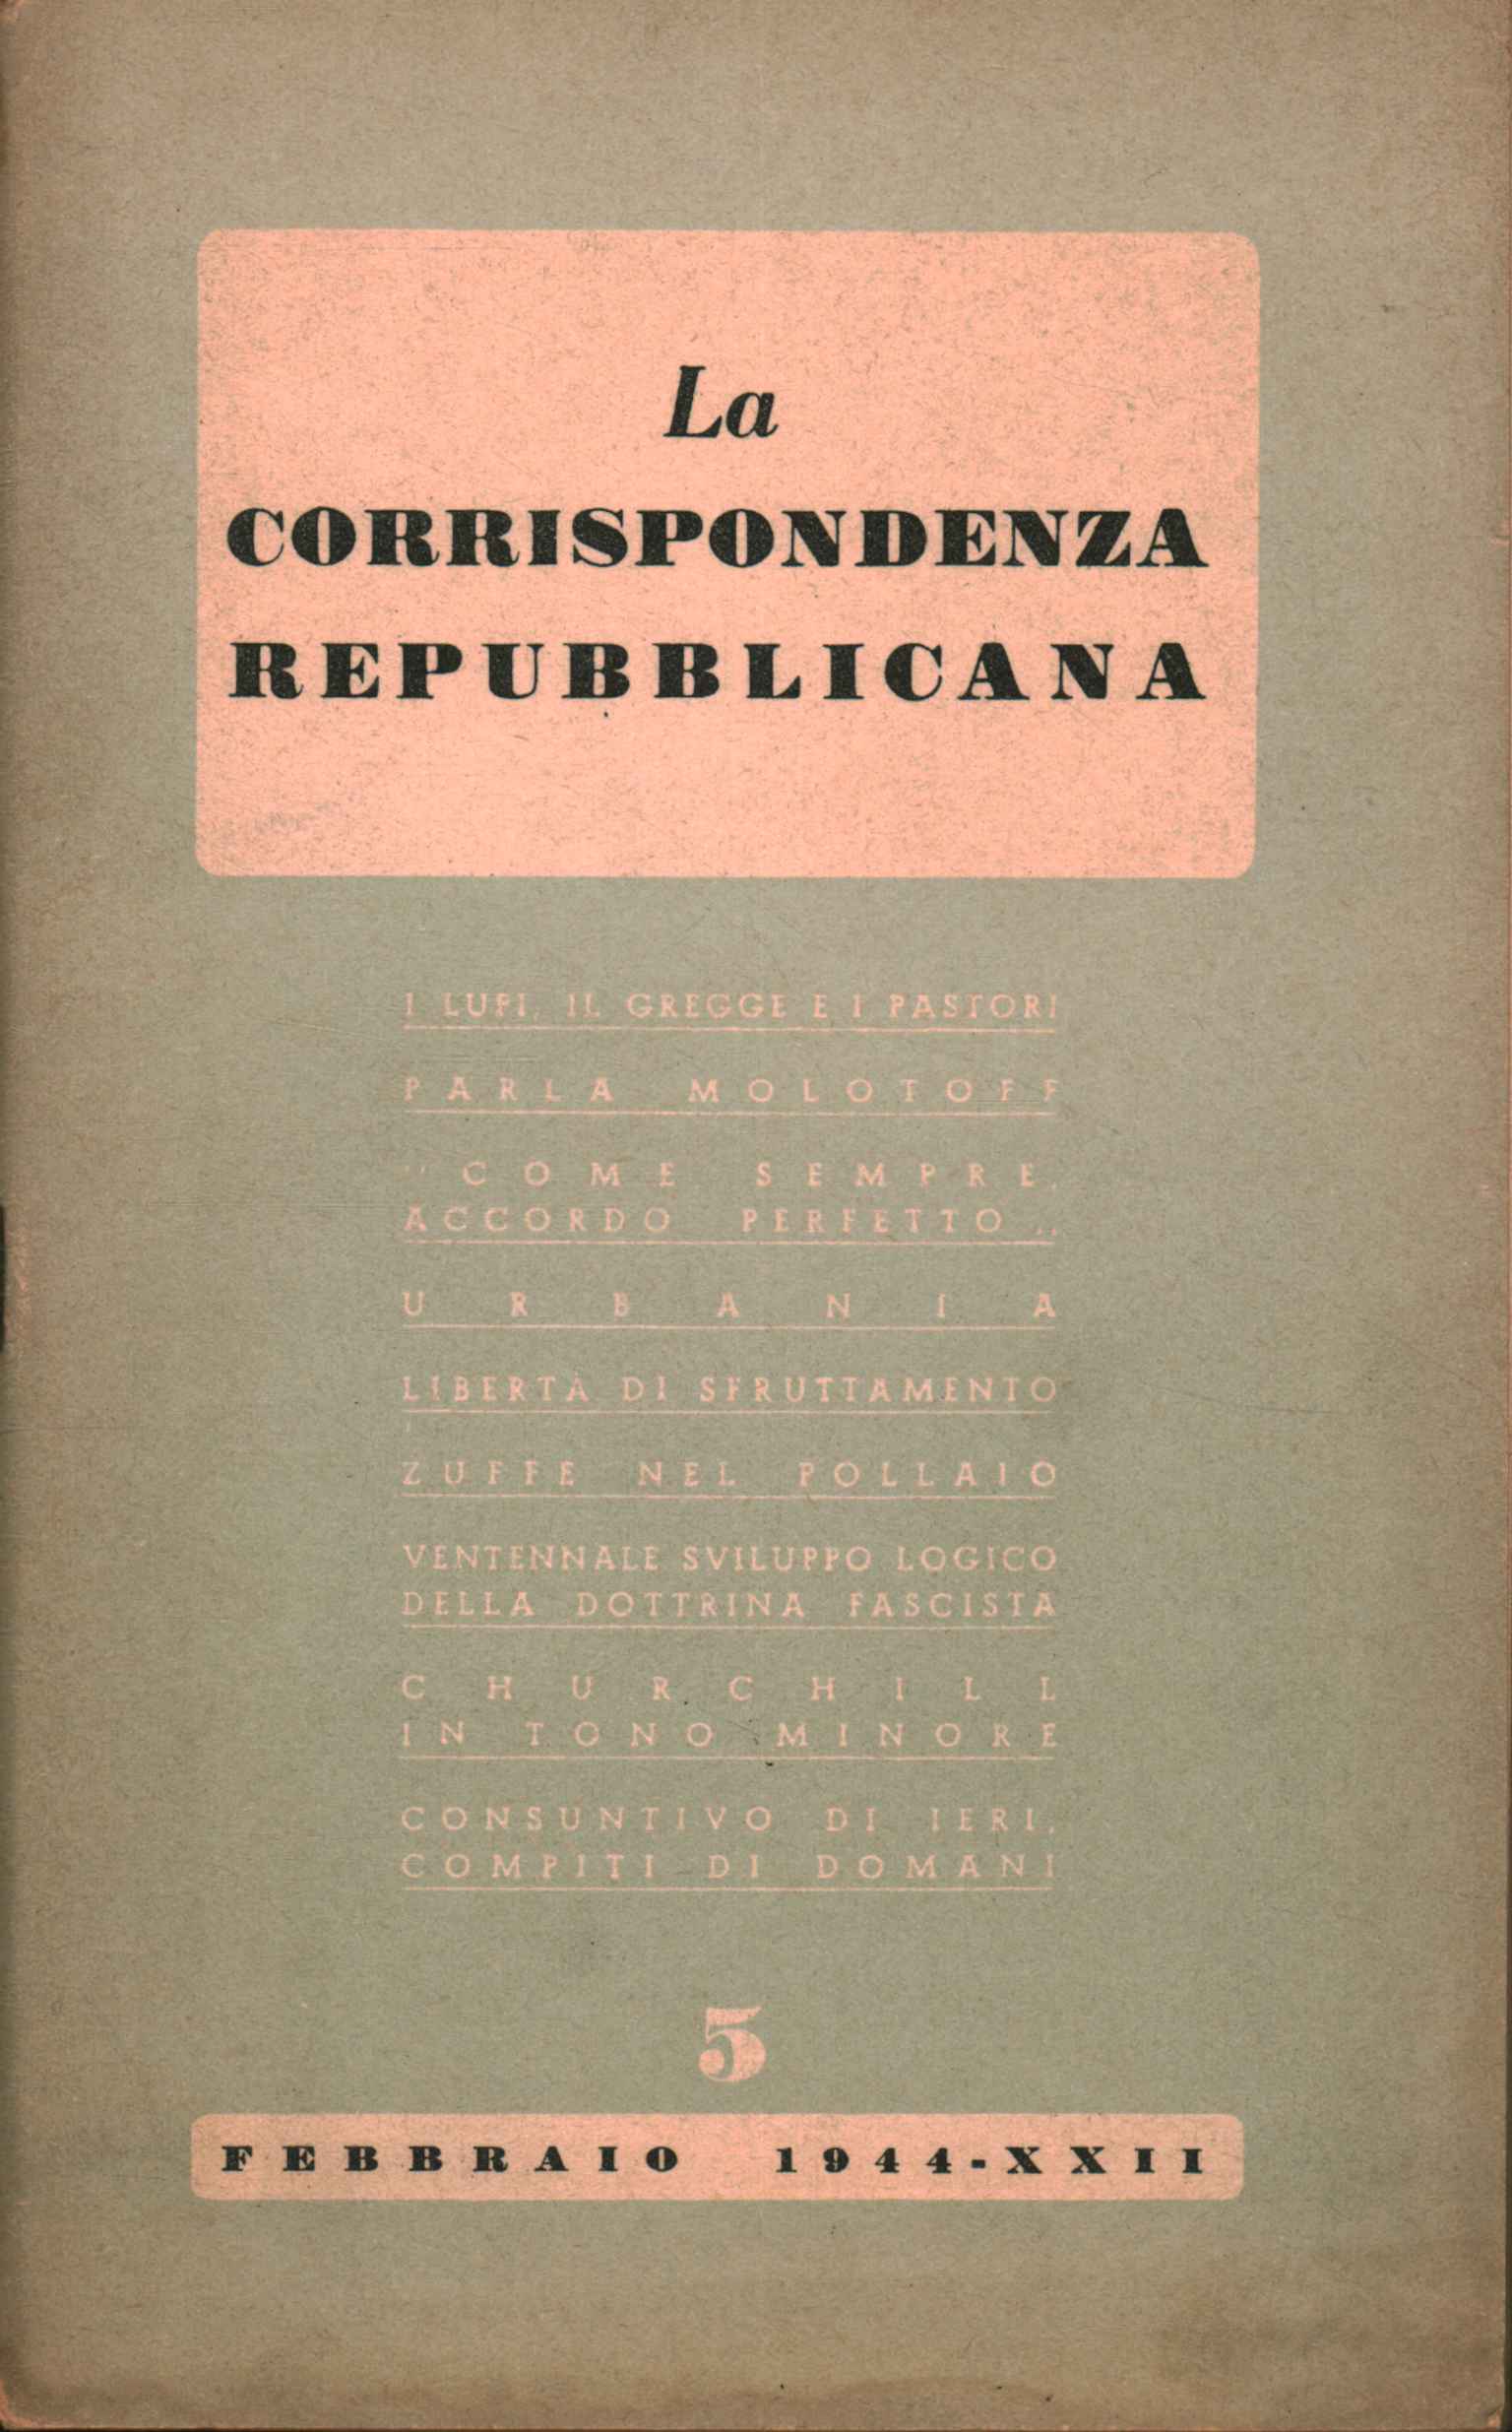 Republikanische Korrespondenz (1944-XXII)%2,Republikanische Korrespondenz (1944-XXII)%2